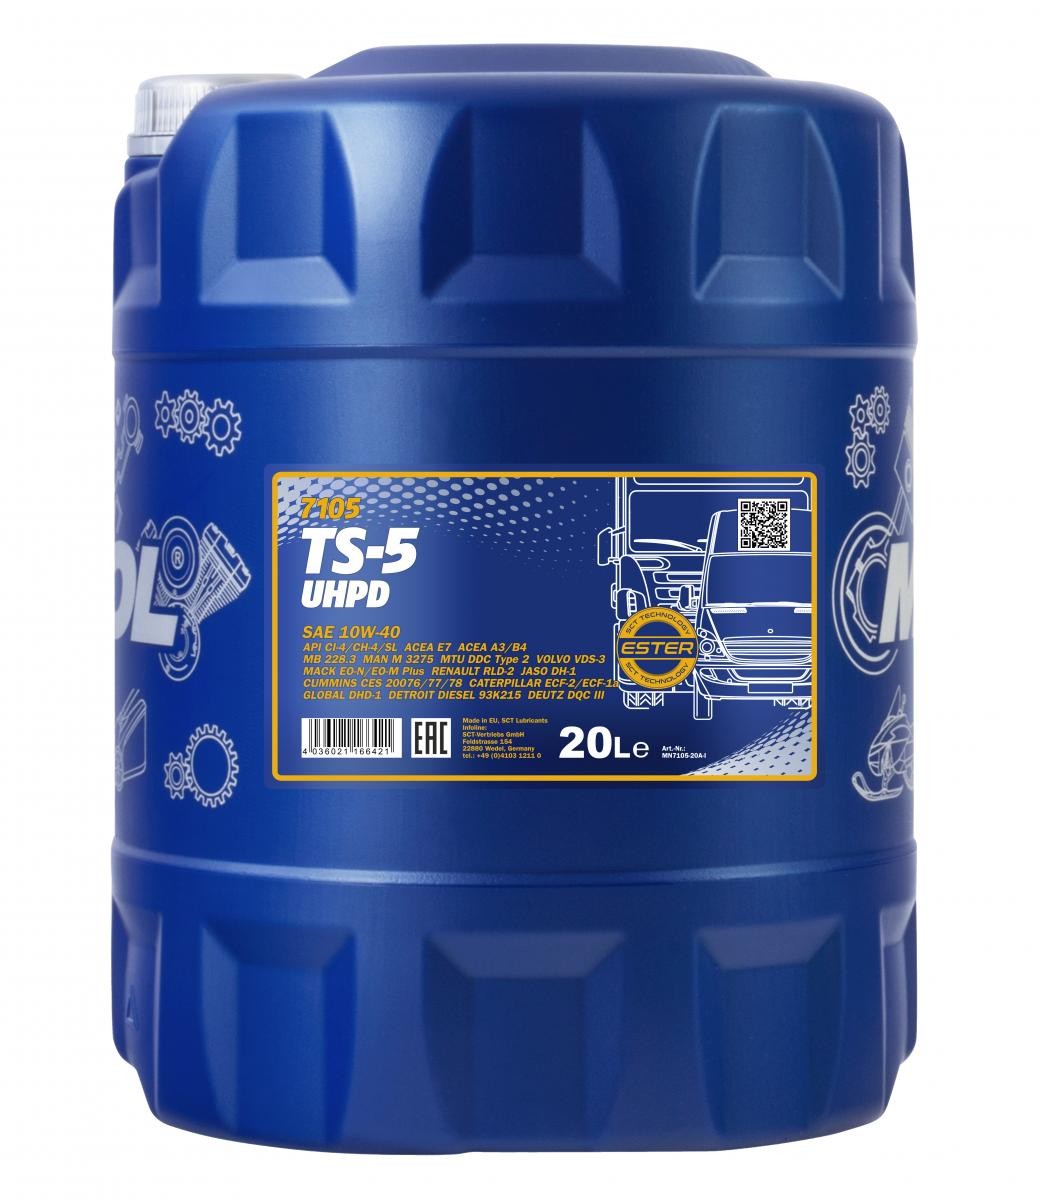 10W-40 Mannol 7105 TS-5 UHPD Motoröl 20 Liter